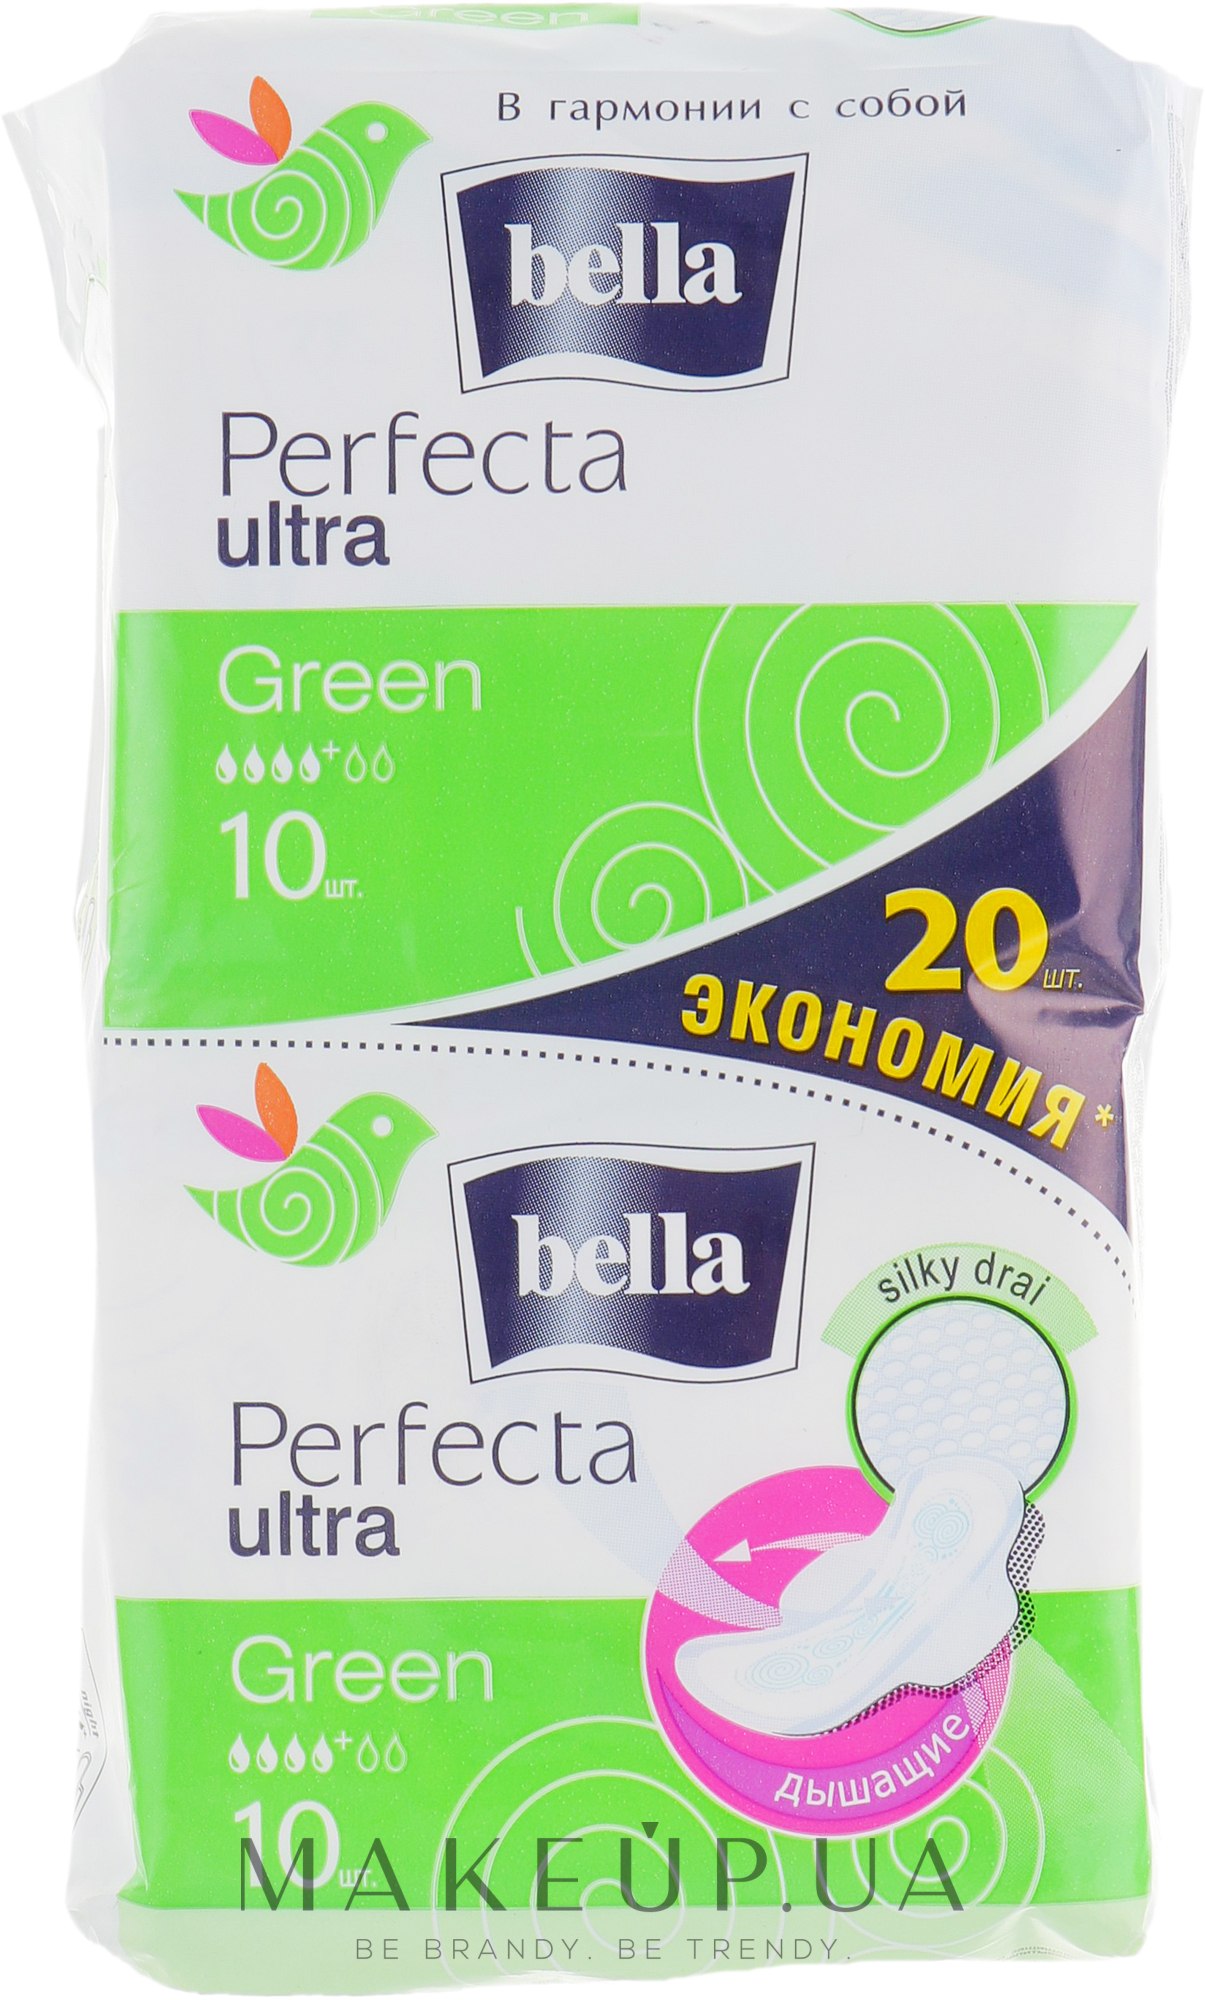 Прокладки Perfecta Green Drai Ultra, 2х10 шт. - Bella — фото 20шт